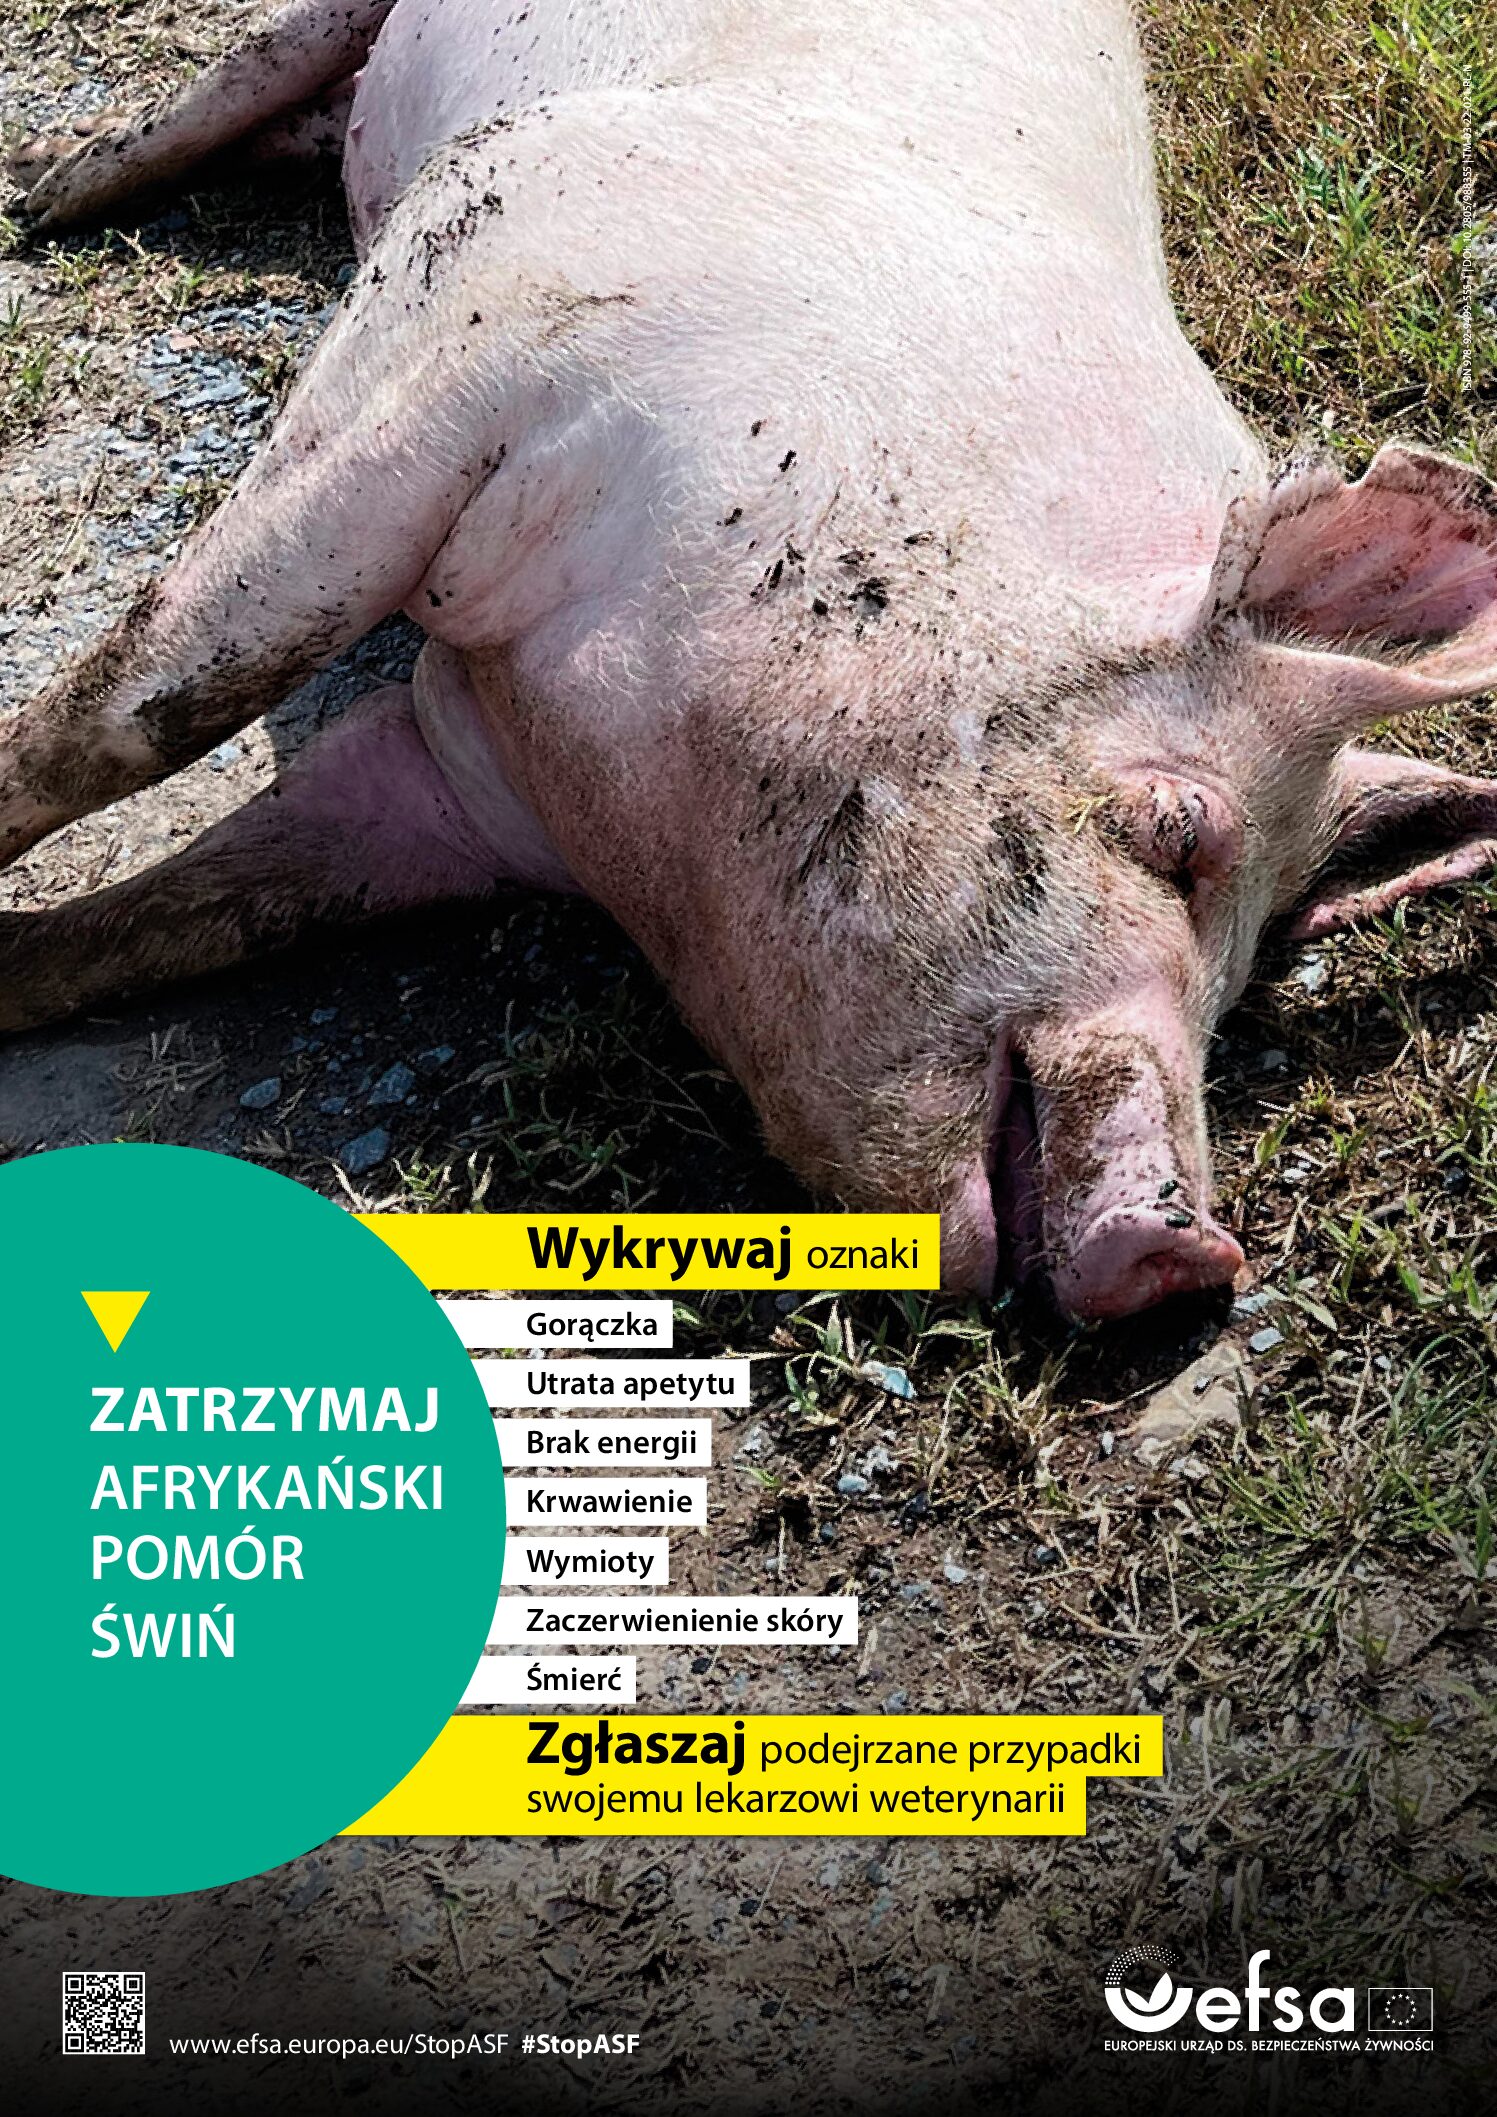 Polska dołącza do EFSA w ogólnoeuropejskiej kampanii na rzecz powstrzymania afrykańskiego pomoru świń (#StopASF)